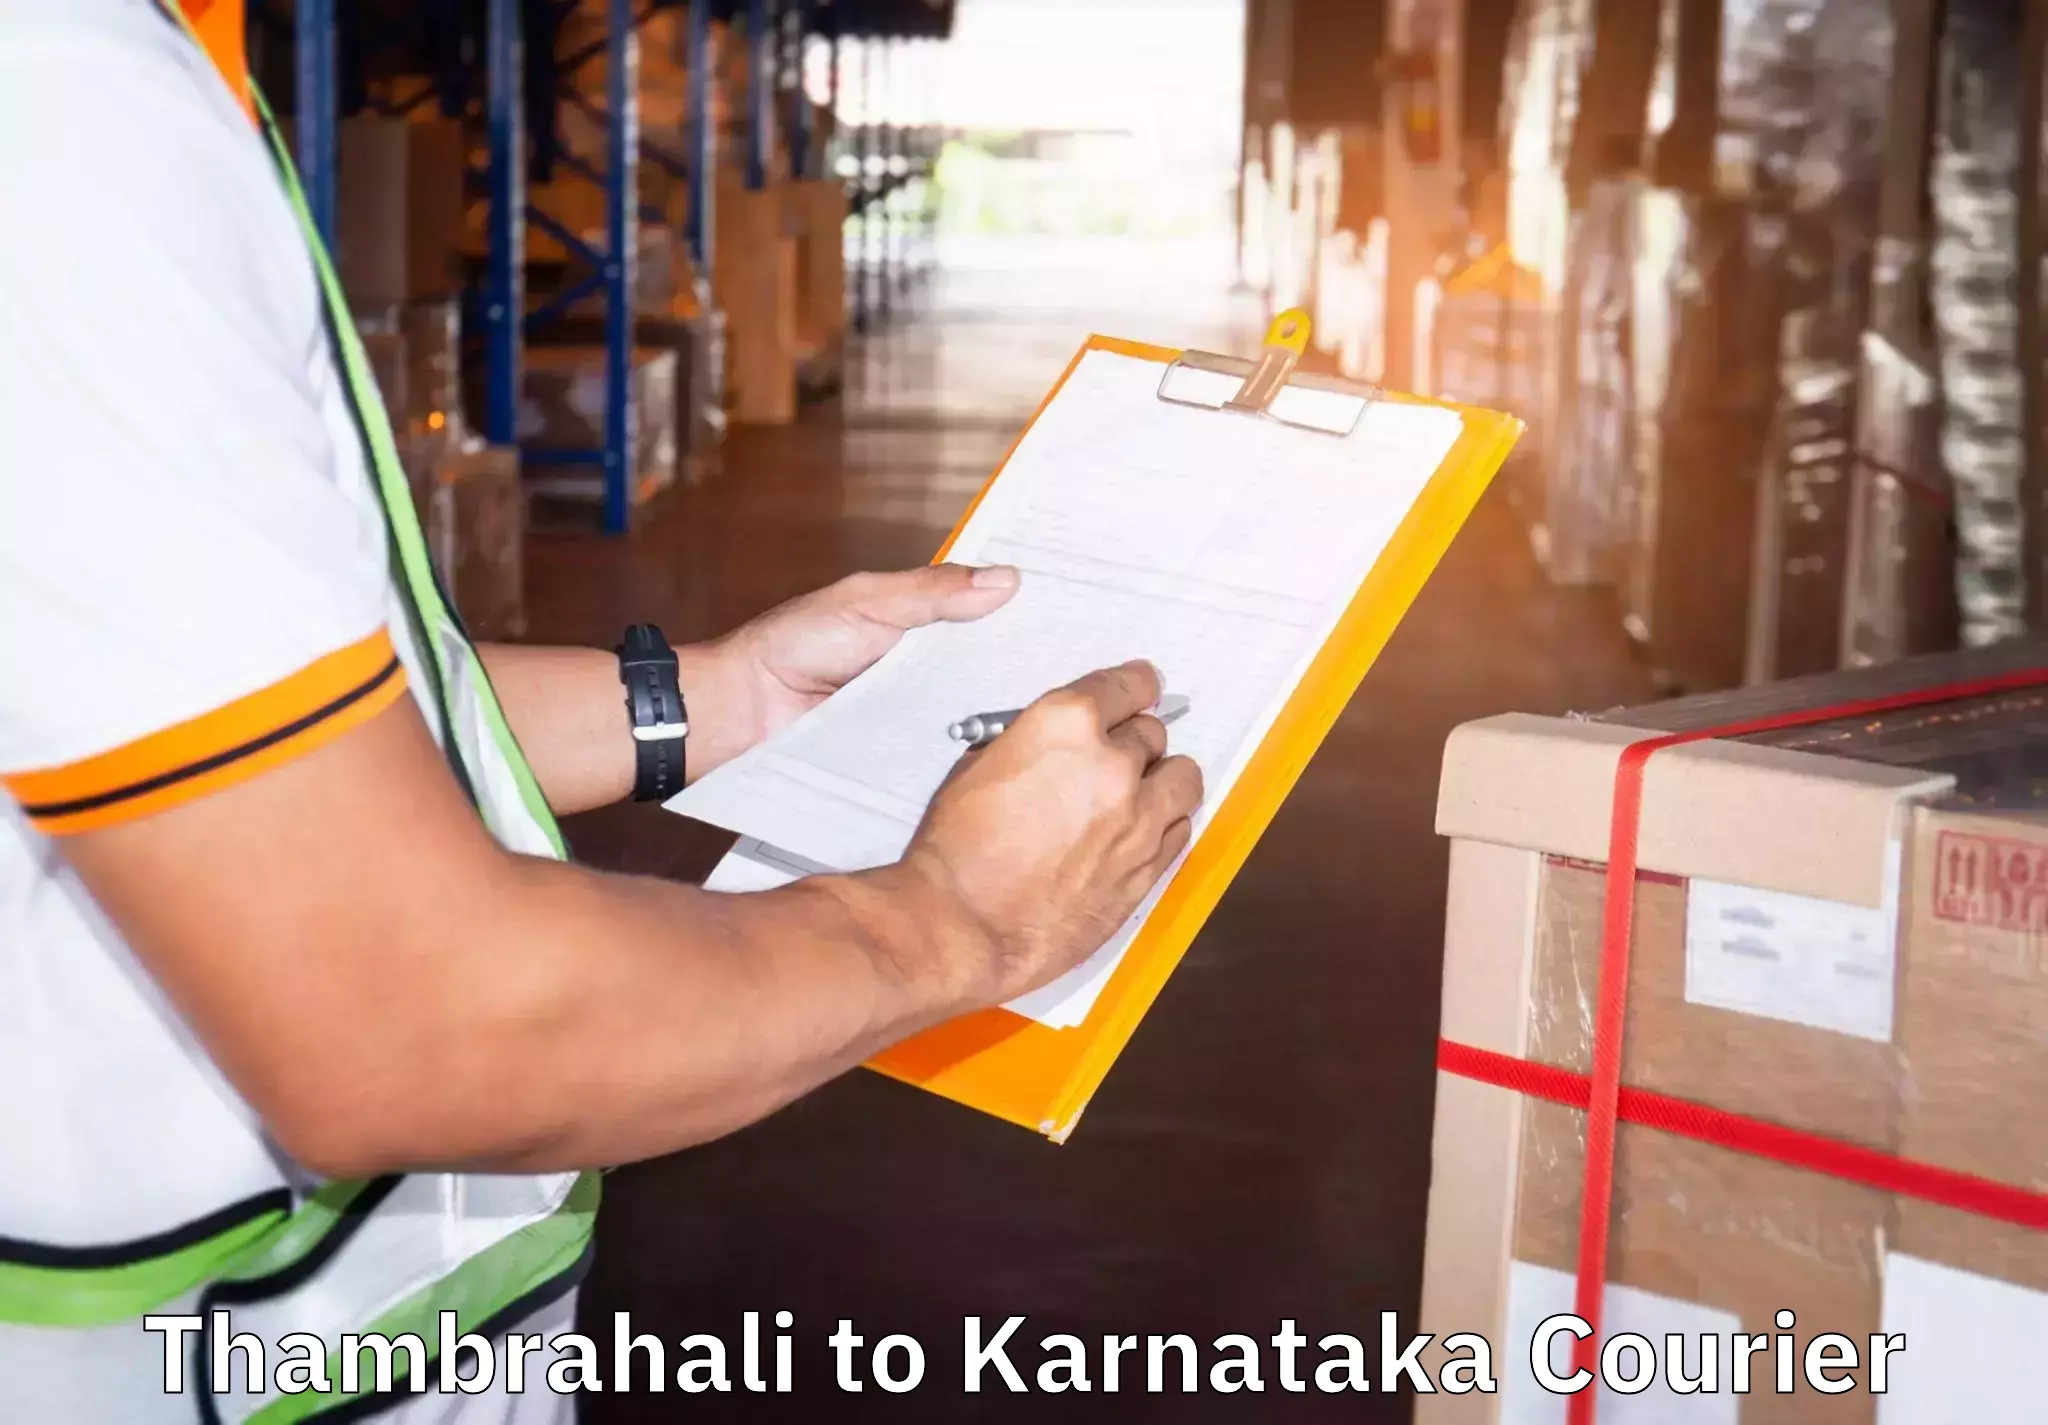 Efficient moving company Thambrahali to Bengaluru